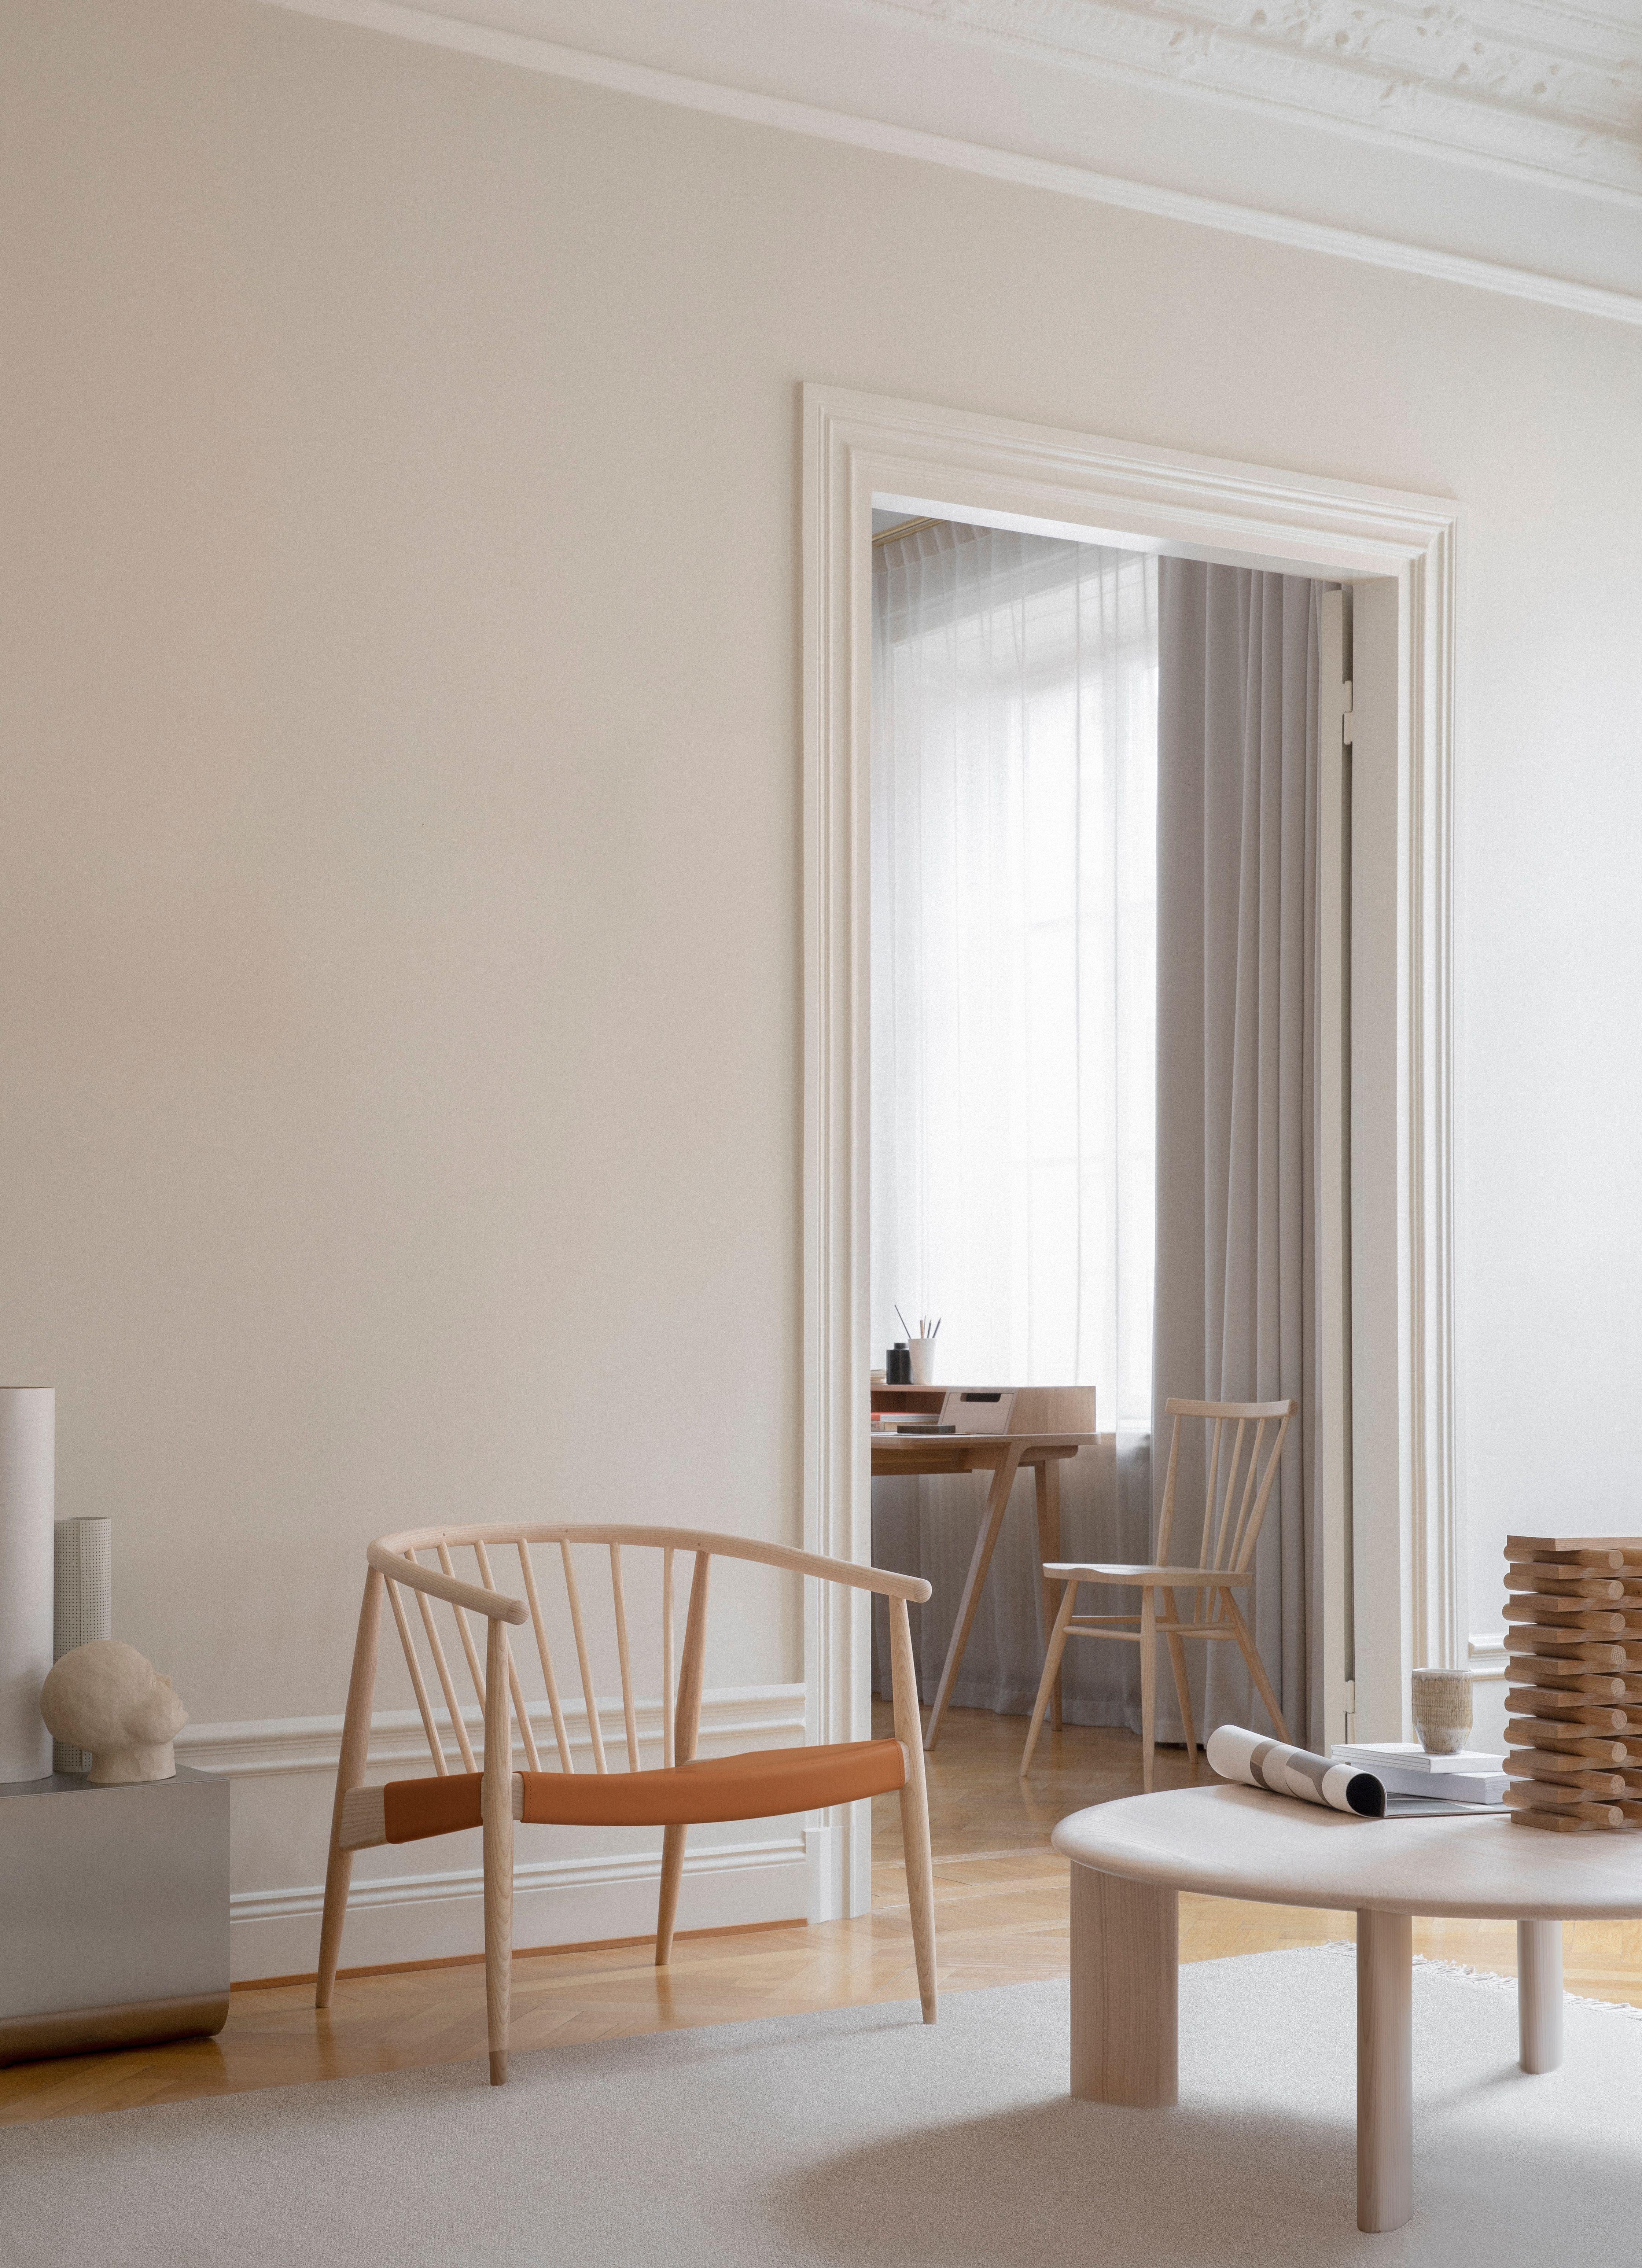 Der Reprise-Stuhl mit Ledersitz ist eine mühelose, elegante Sitzlösung mit raffinierter, subtiler Präsenz, die sich durch architektonische Referenzen auszeichnet. Der 2020 eingeführte Stuhl ist eine Collaboration zwischen L.Ercolani und Norm